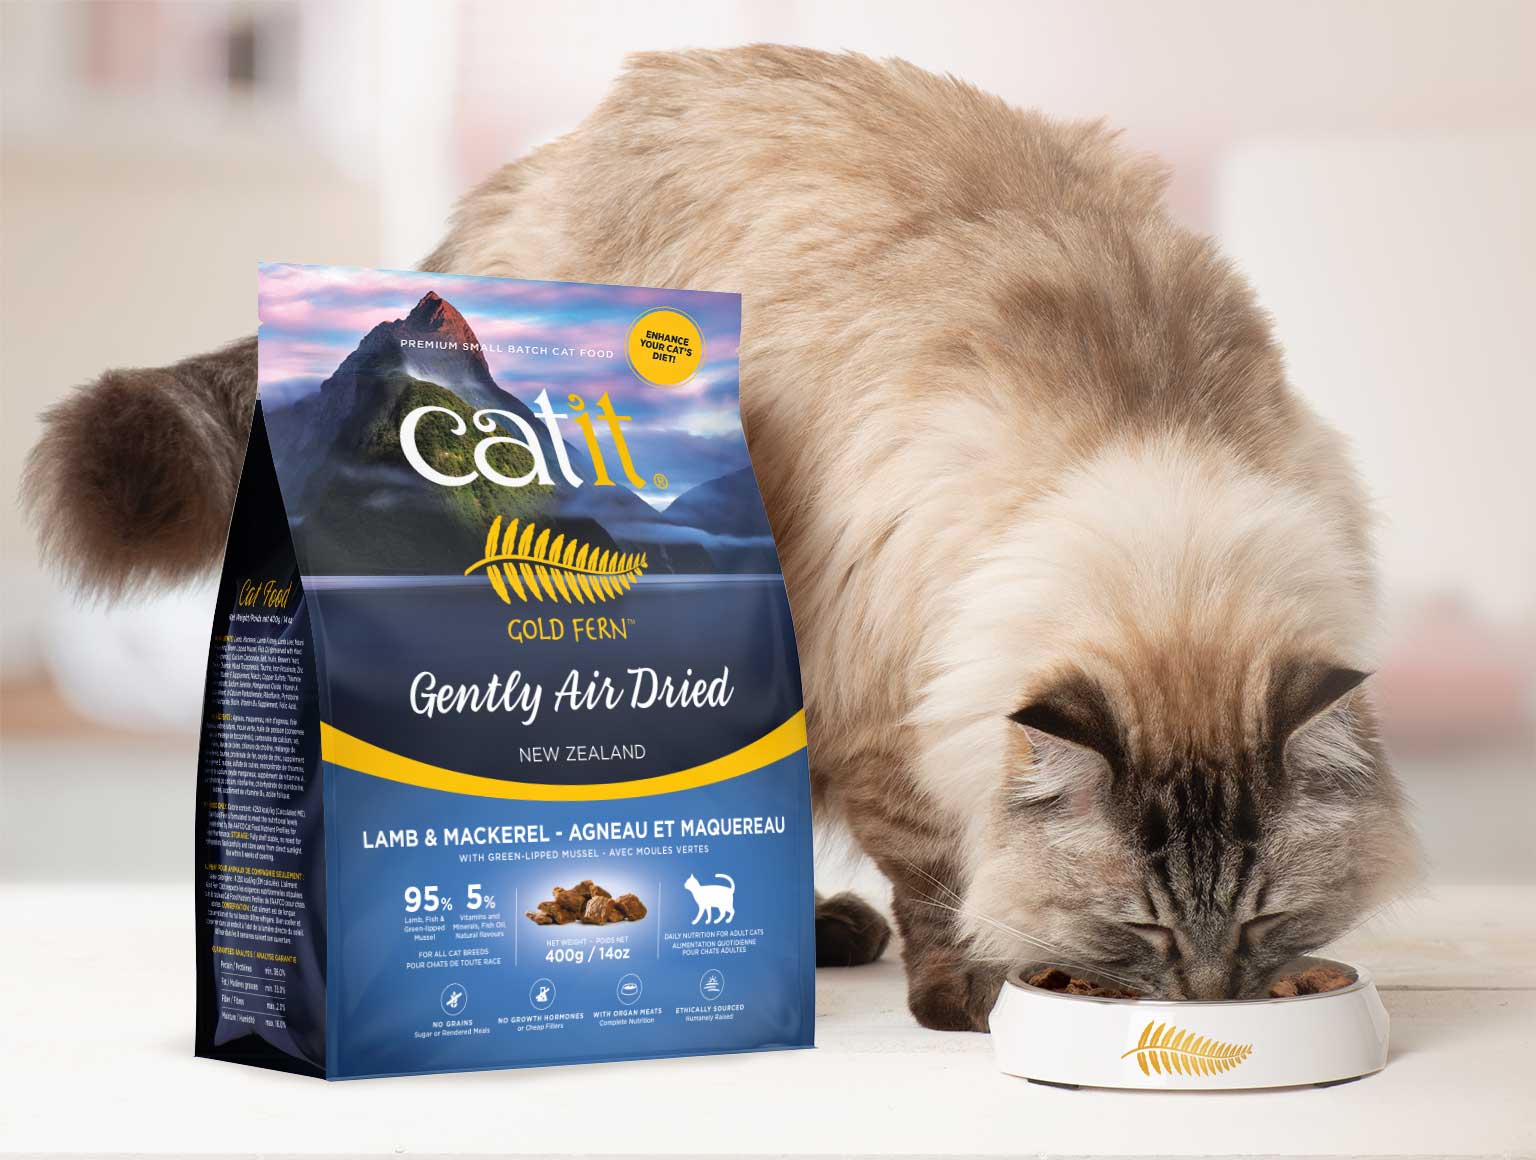 Croquettes sèches avec nutriments bien préservés pour chats pour rehausser l’alimentation de votre félin